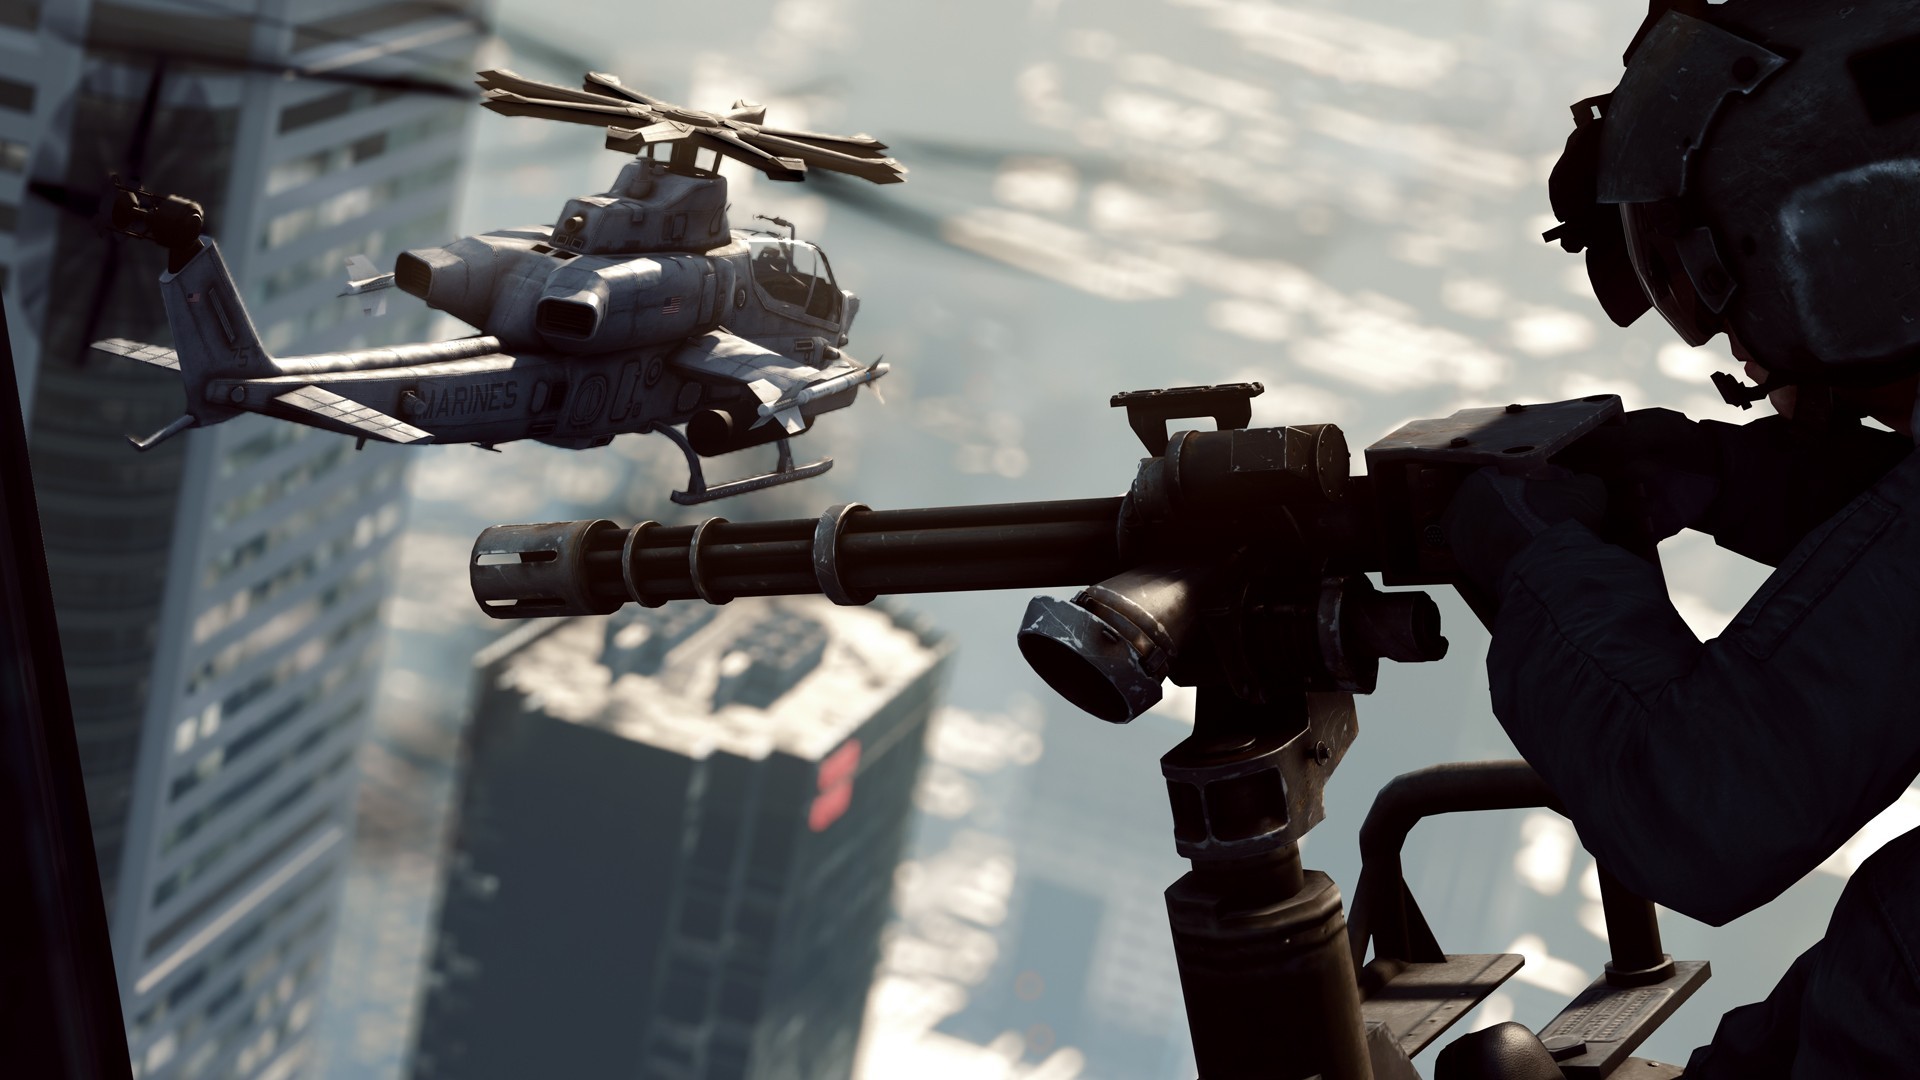 Buy Battlefield 4: Premium Edition EA App